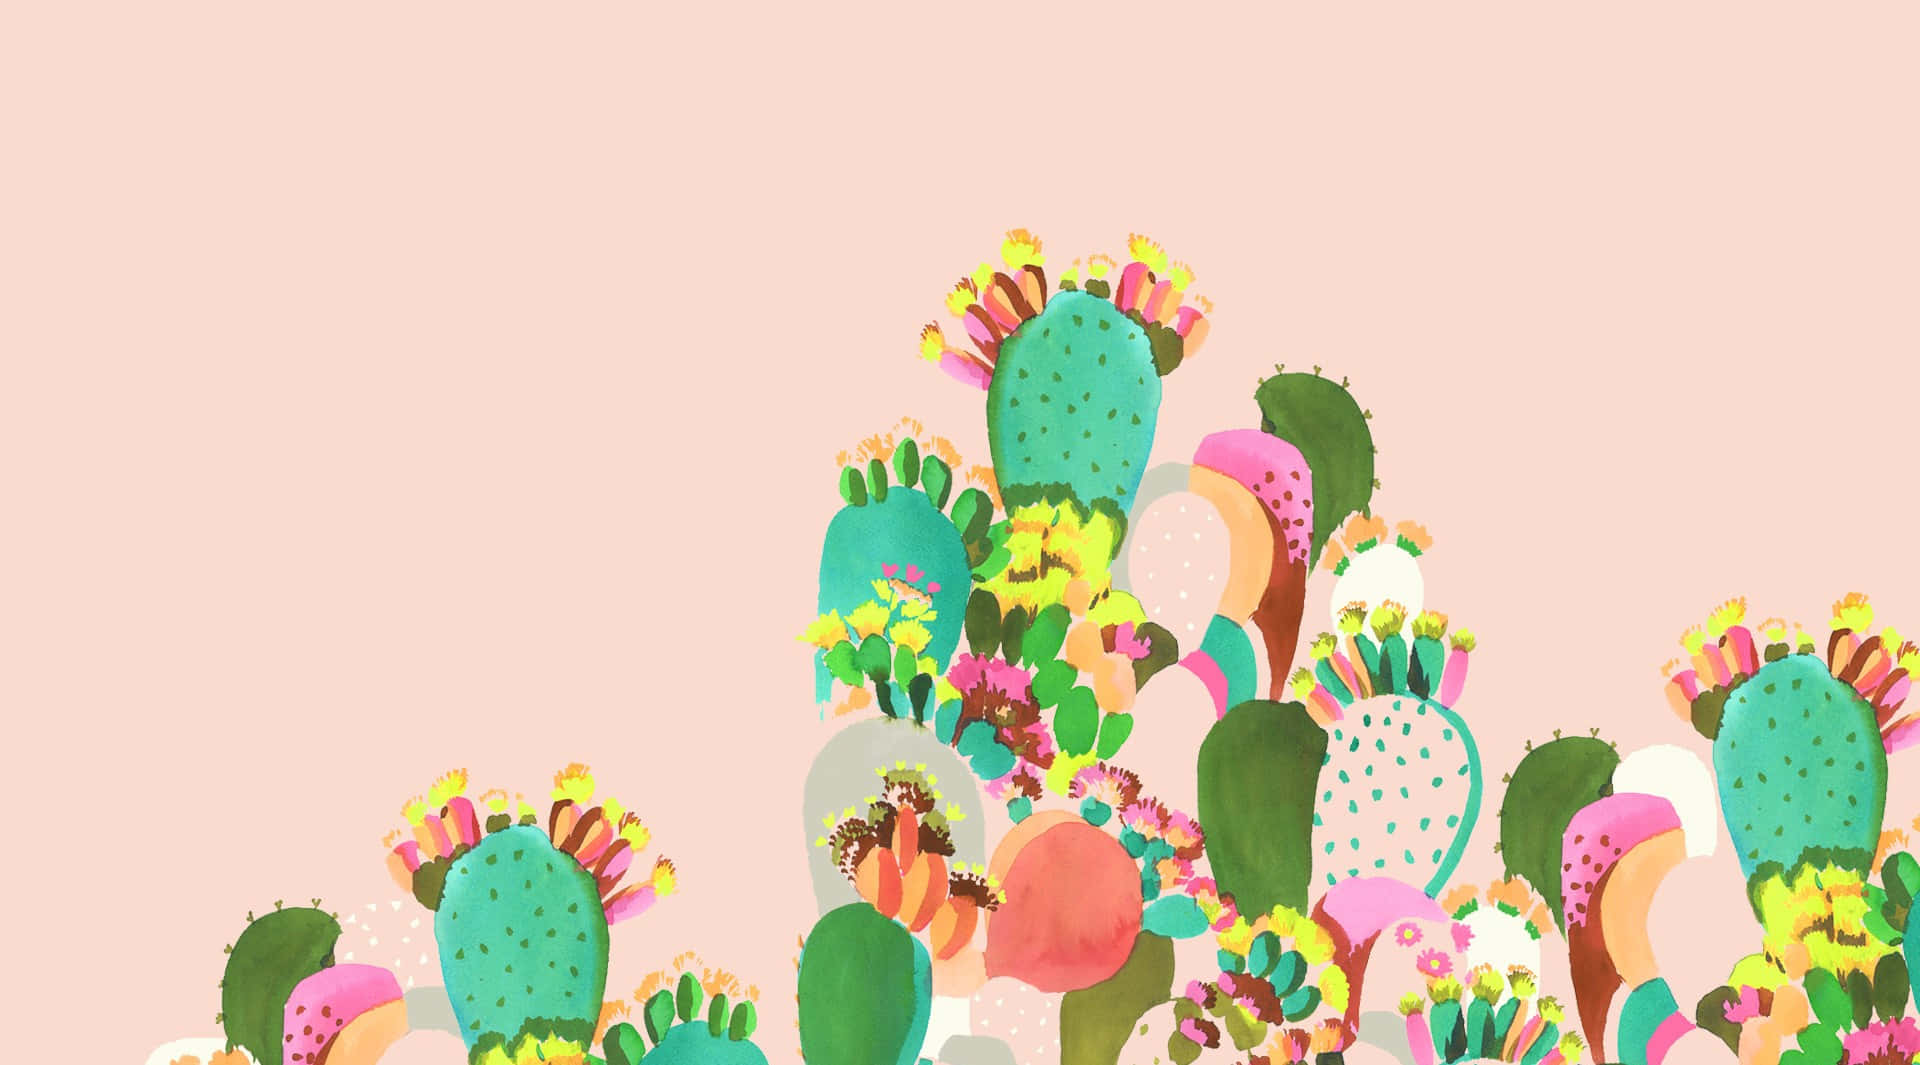 Imagende Arte De Cactus Estético En Colores De Primavera